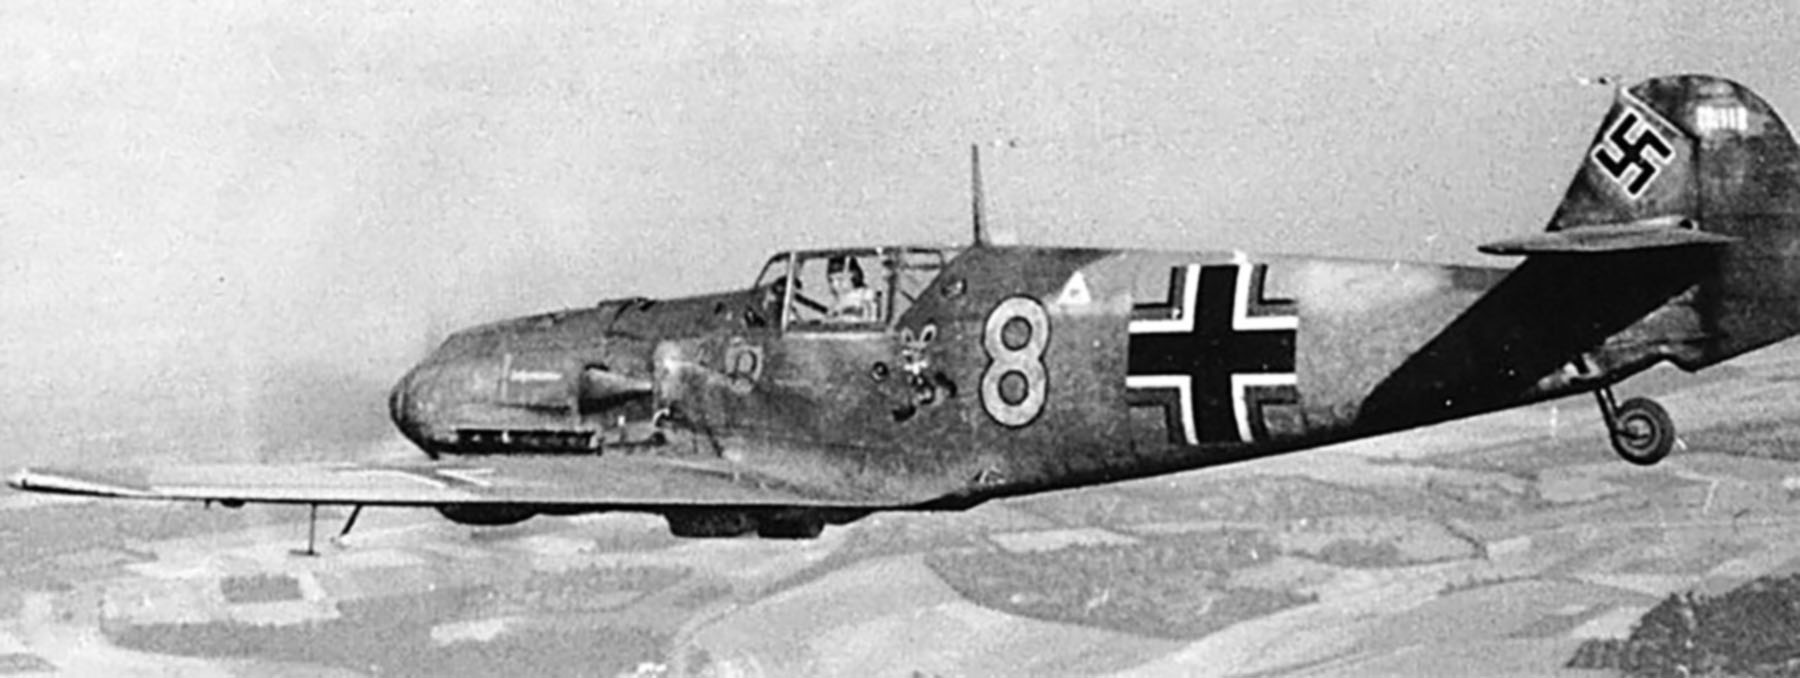 Messerschmitt Bf 109E4 3.JG2 Yellow 8 Franz Jaenisch WNr 1588 Cherbourg France 1940 02